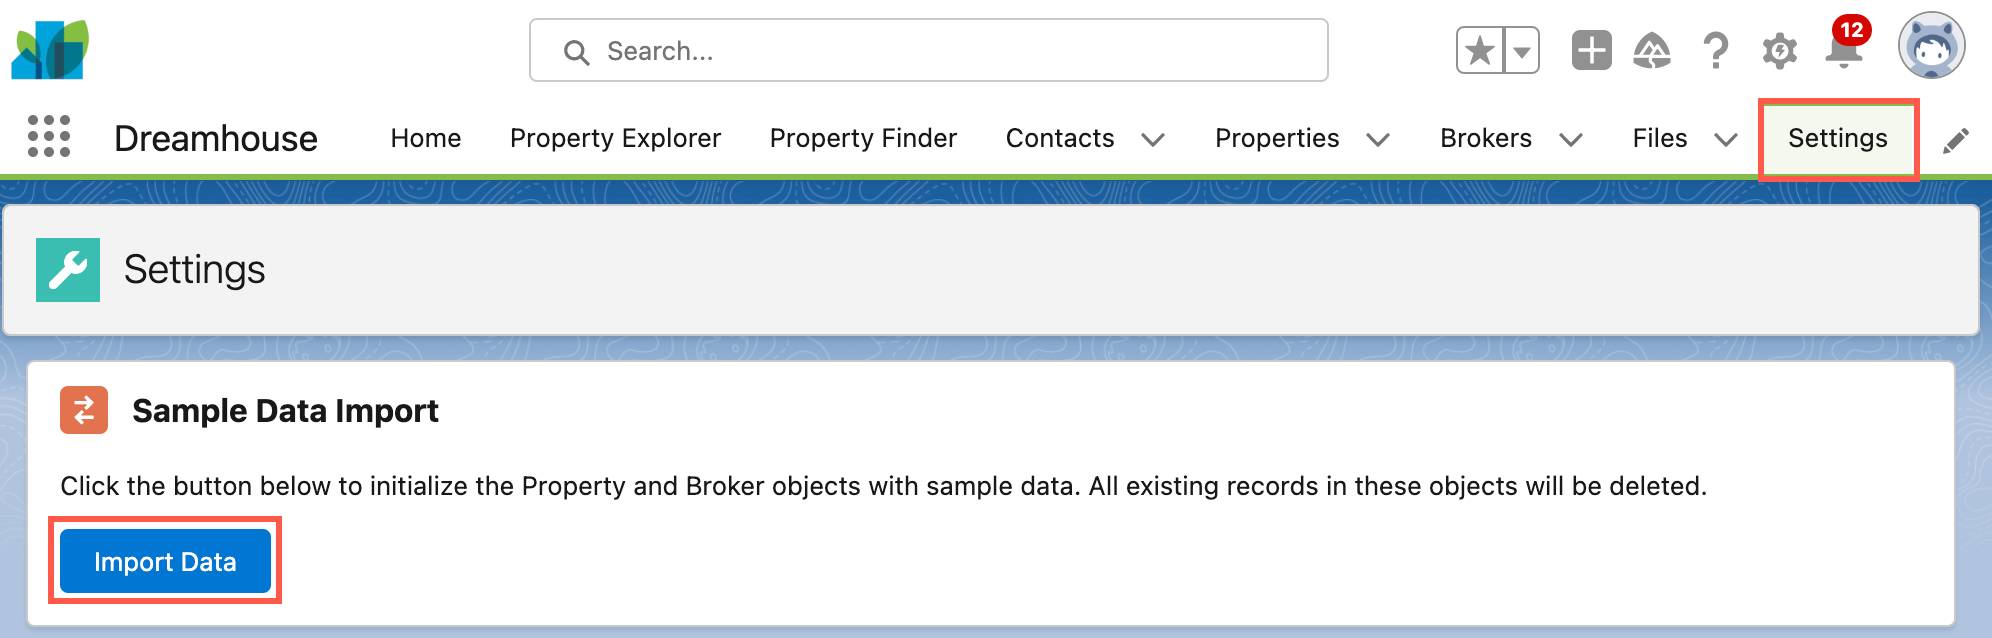 L’onglet Dreamhouse Settings (Paramètres de Dreamhouse) affichant le bouton Import Data (Importer des données).